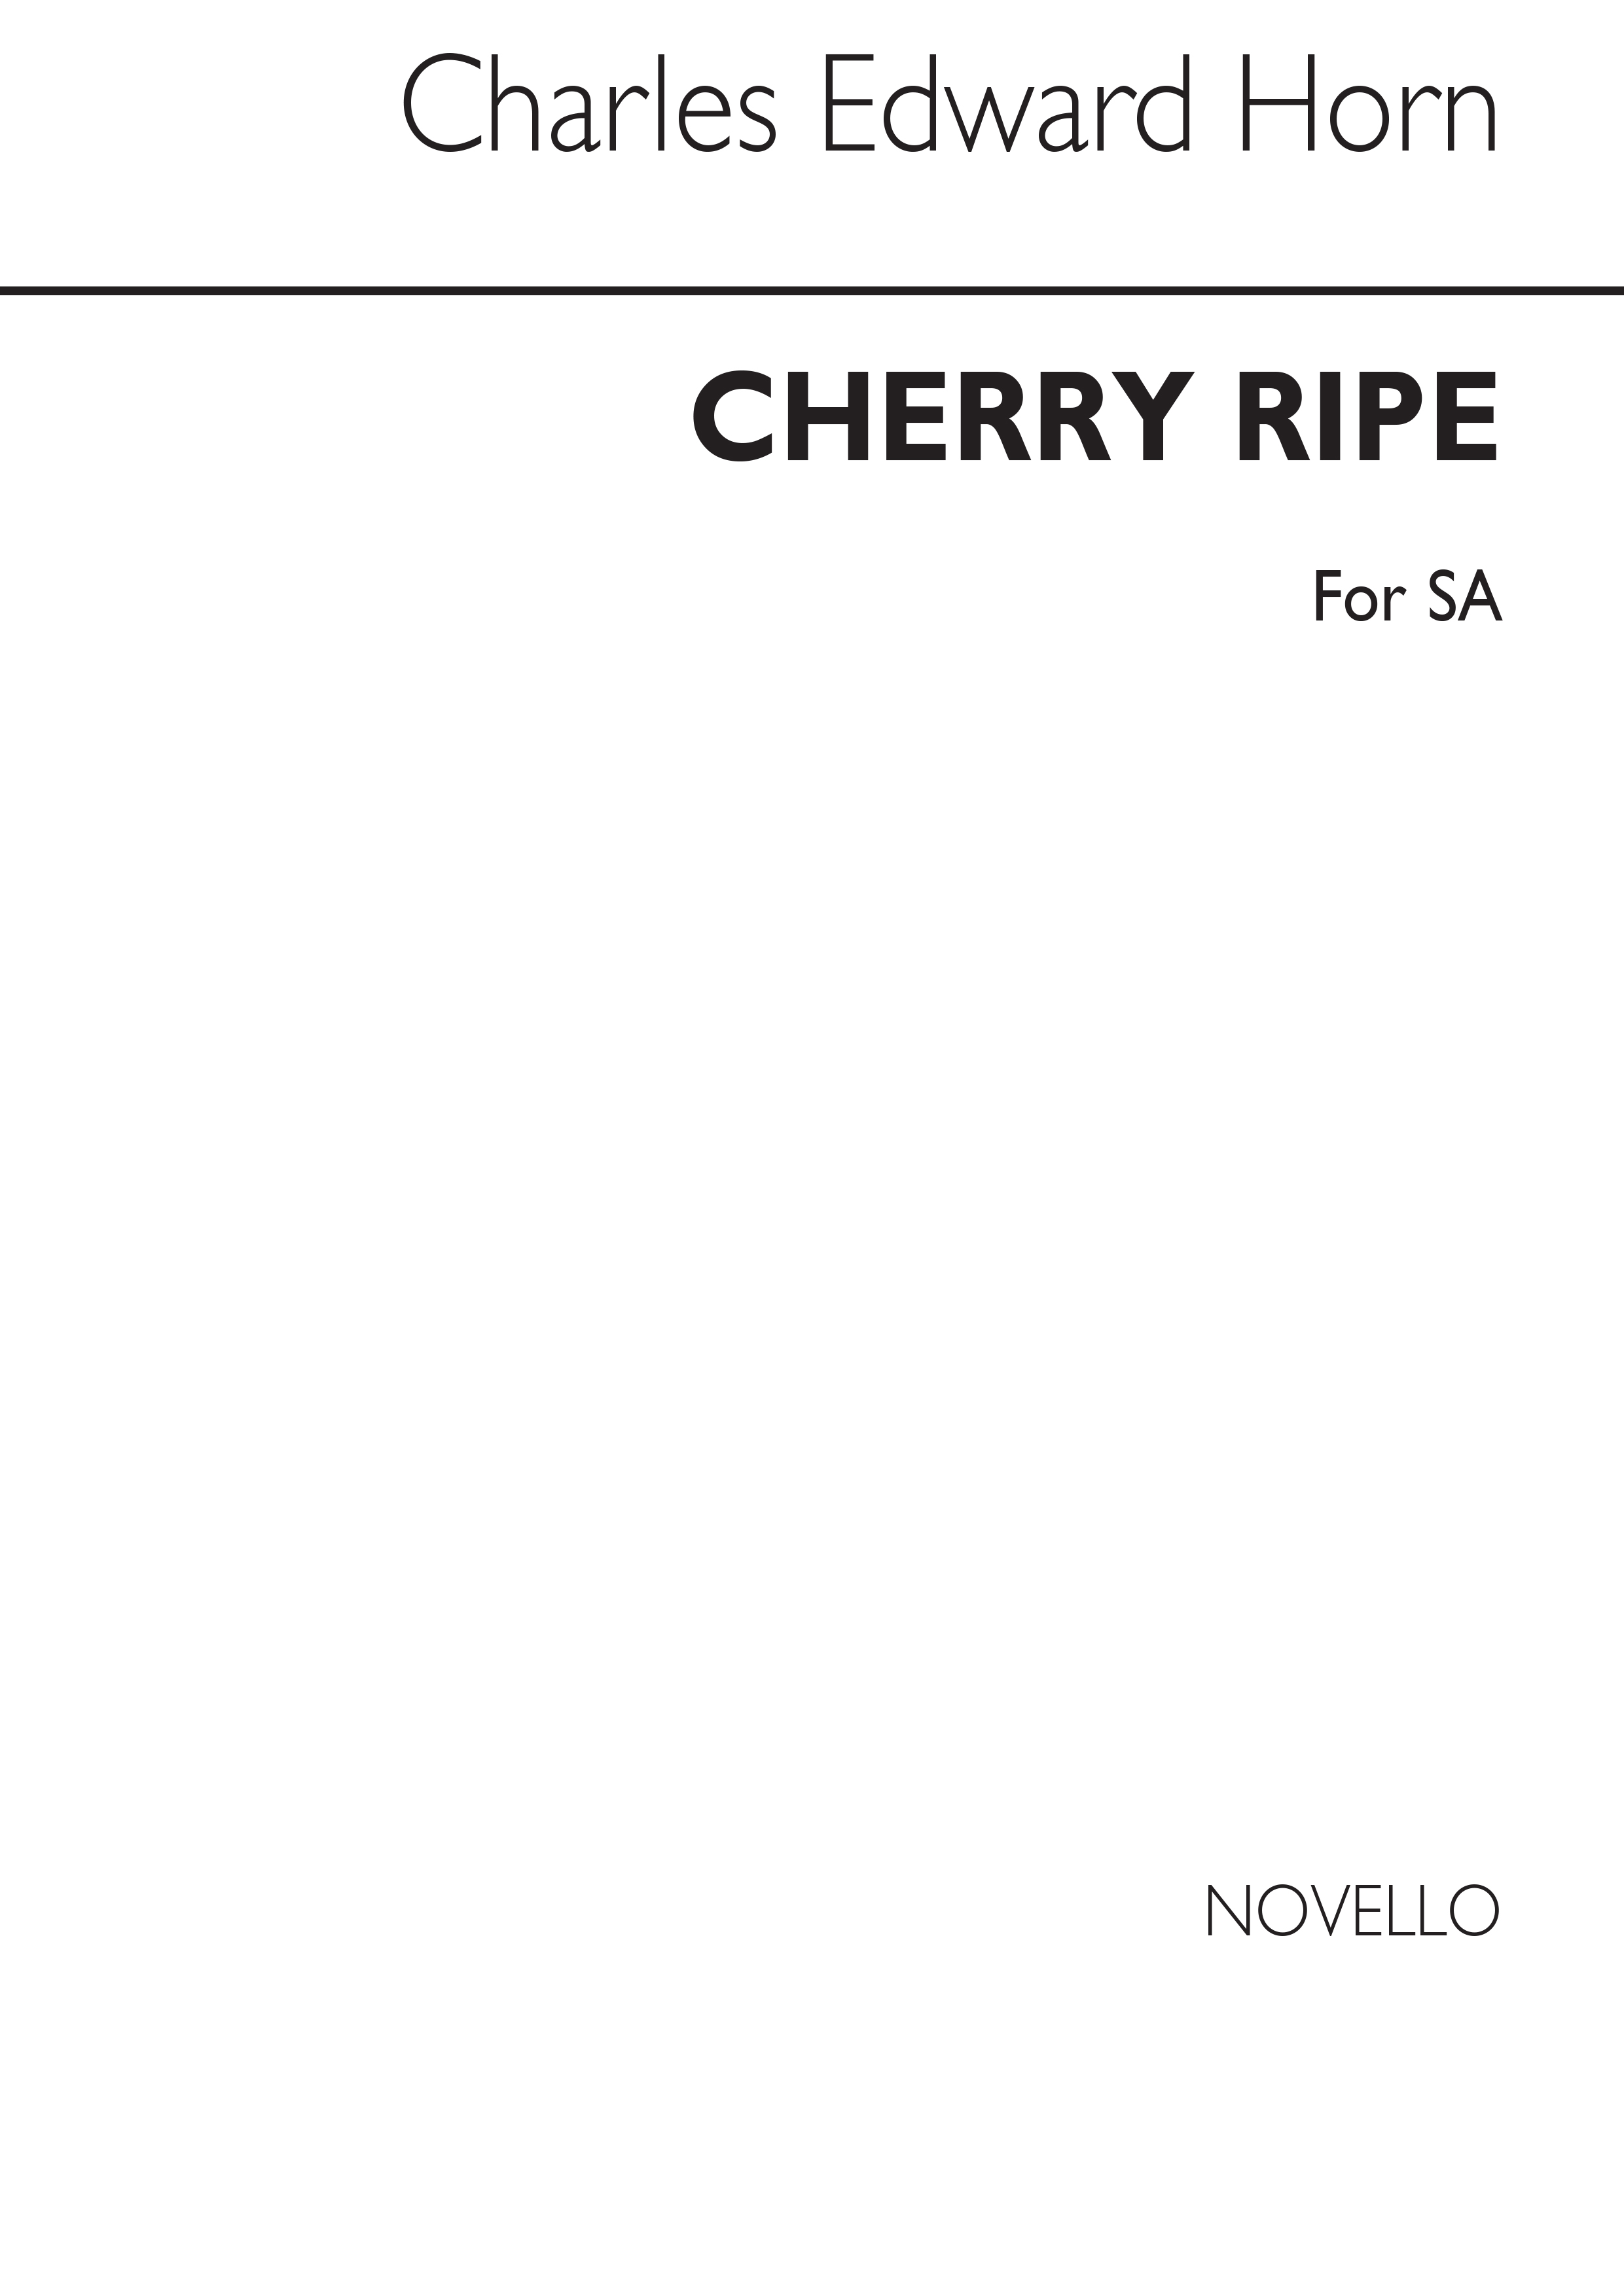 Horn, C.E. Cherry Ripe 2 Part